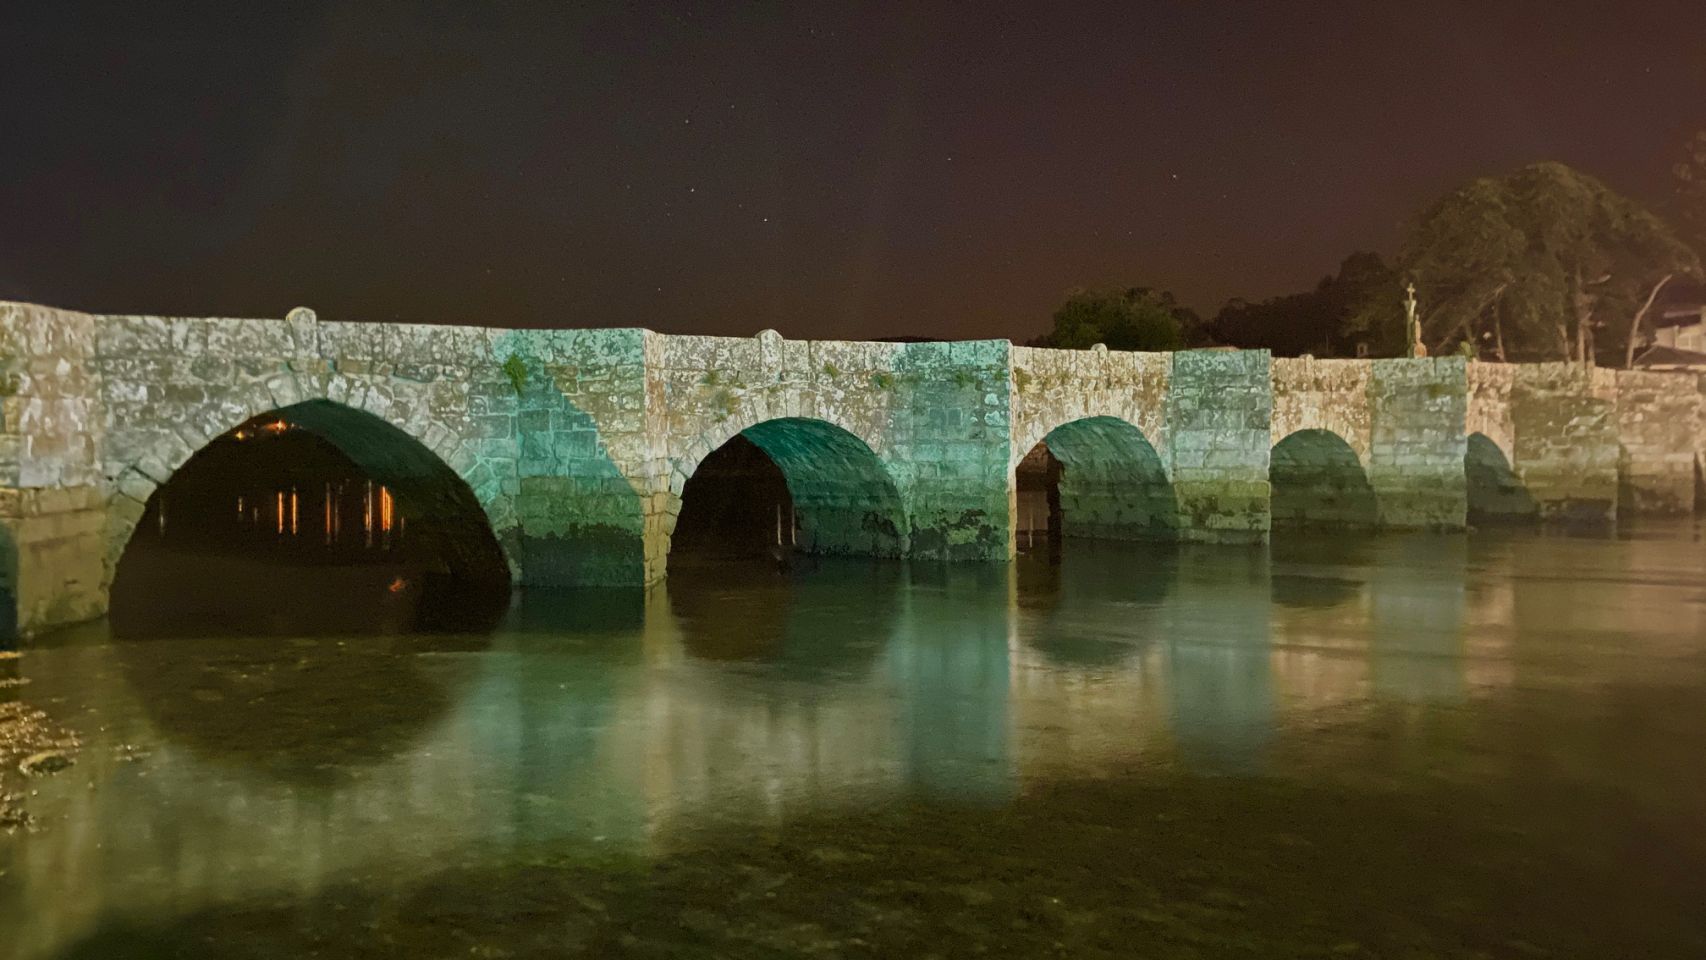 El Concello de Nigrán también iluminó de verde el puente sobre el río Miñor.